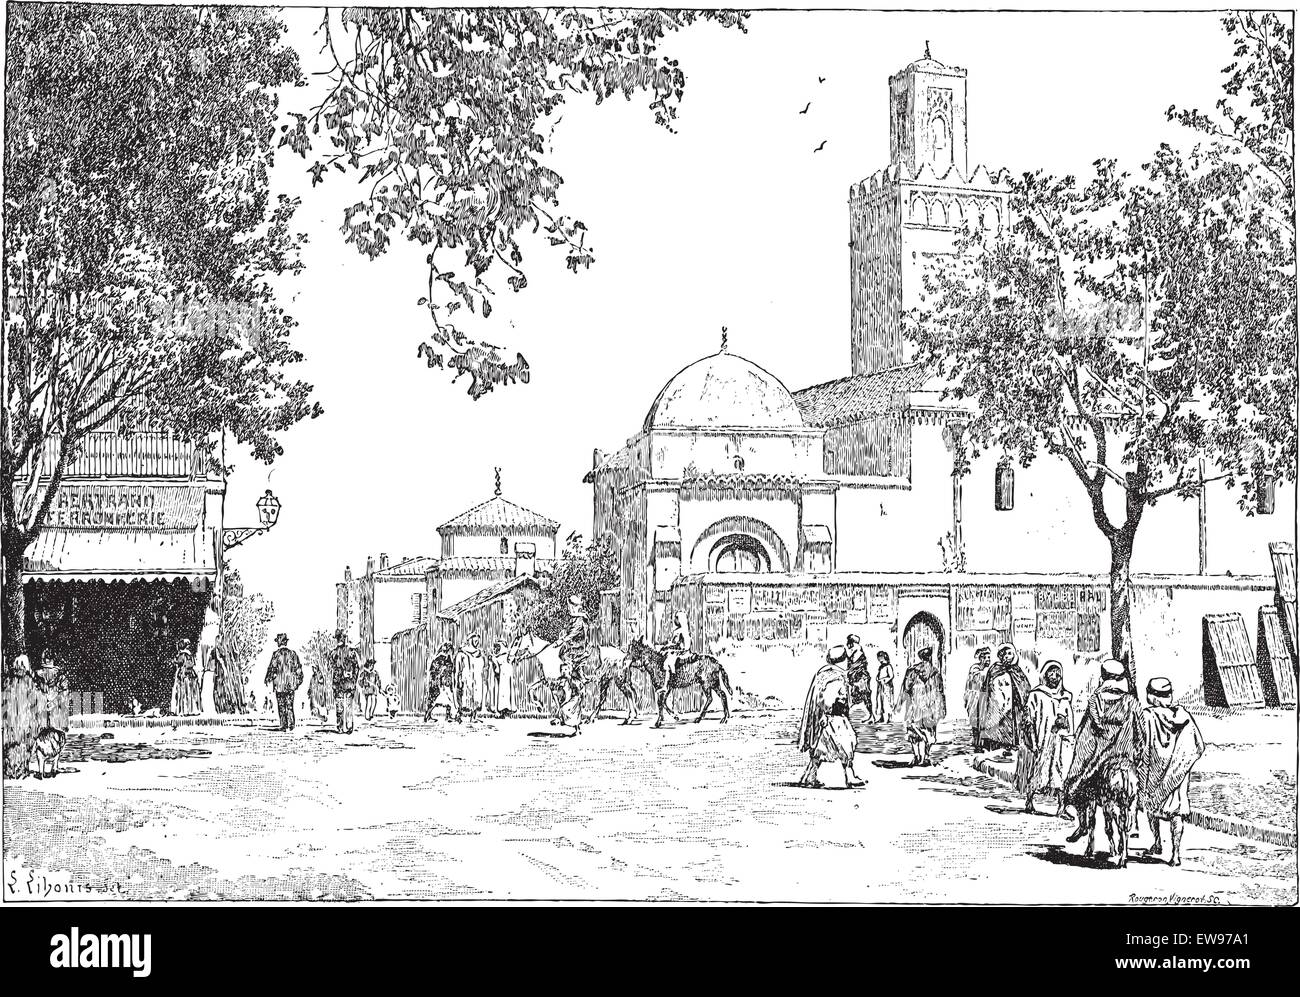 Straße der großen Moschee, Tlemcen, Algerien, graviert Vintage Illustration. Wörter und Sachen - Larive und Fleury Stock Vektor